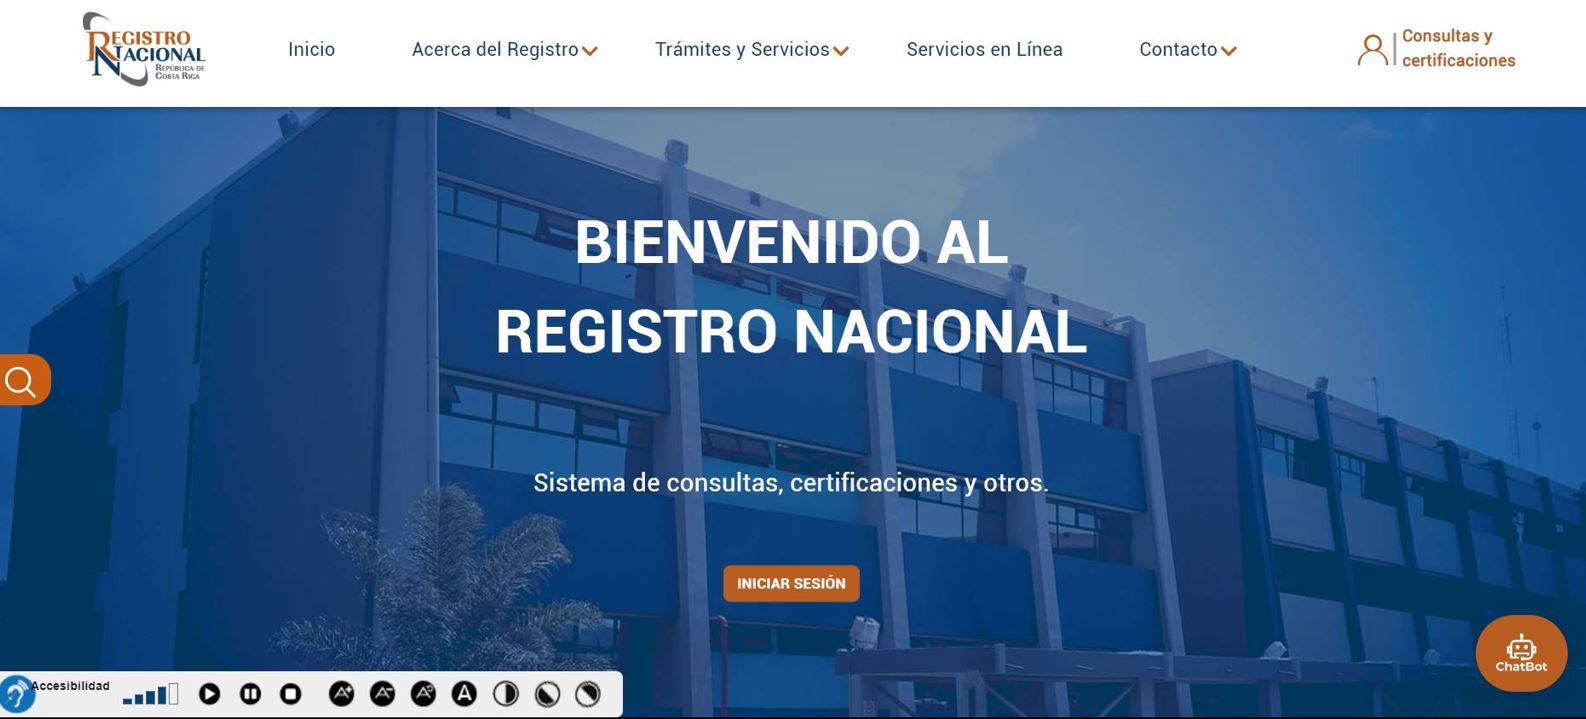 Registro Nacional habilita nuevo portal web para tramitar certificaciones, inscribir documentos y reponer placas